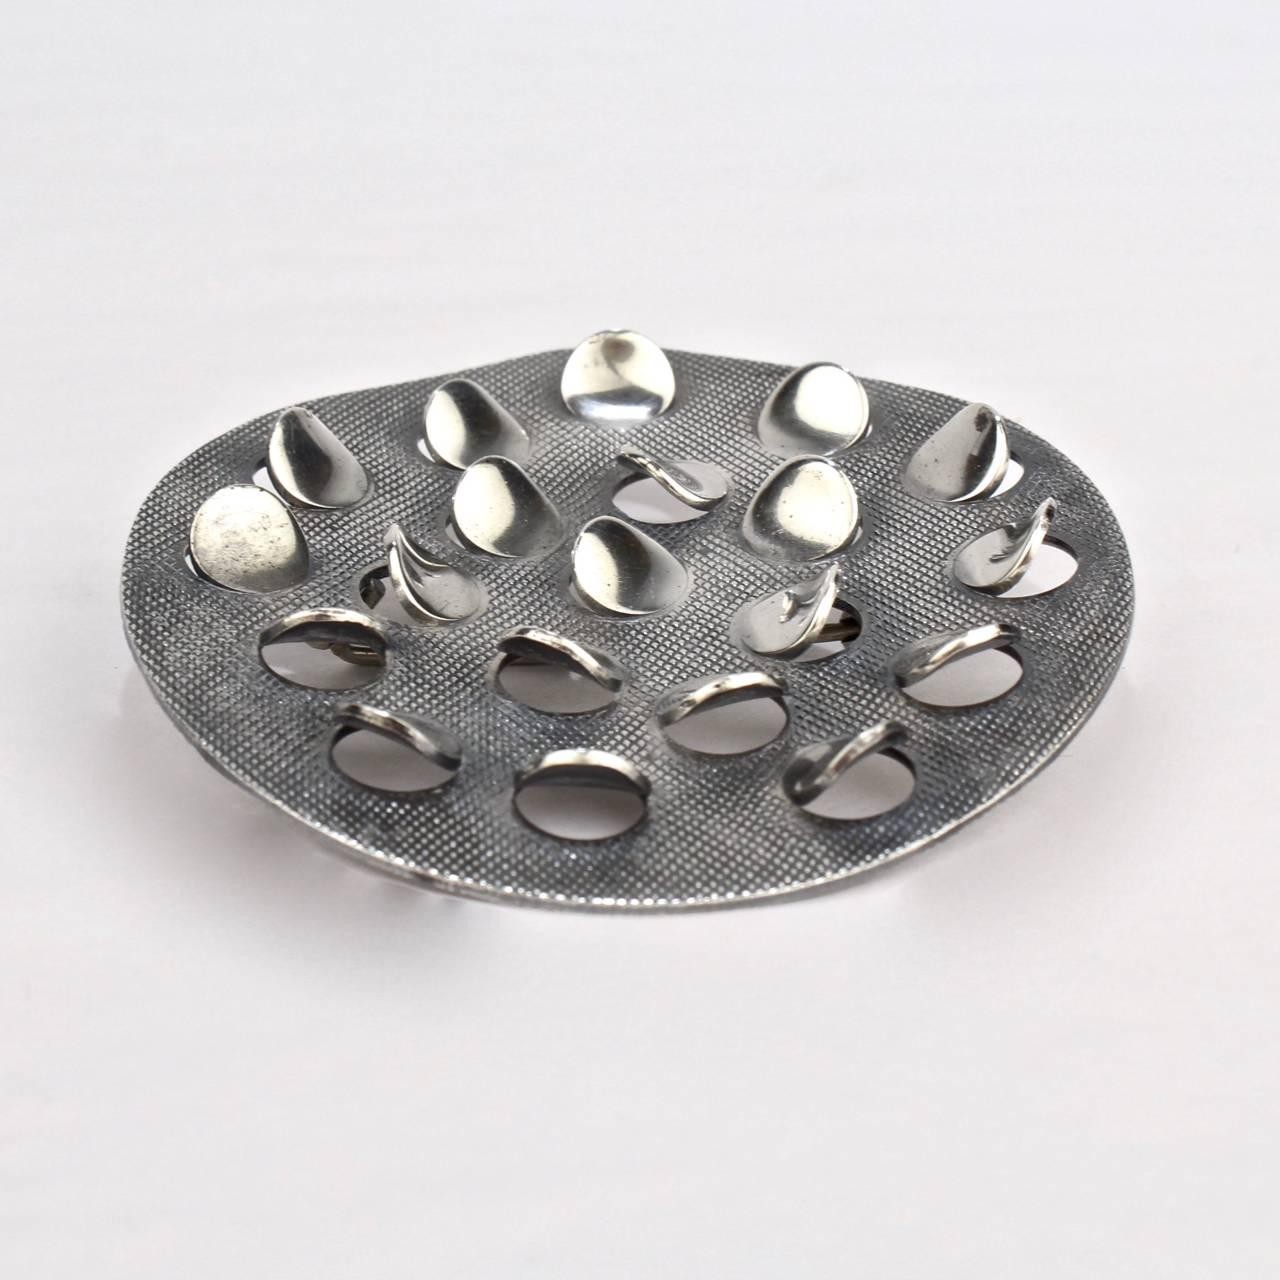 Sterling Silver Modernist Scales Brooch by Grete Prytz Kittelsen for J. Torstrup 1